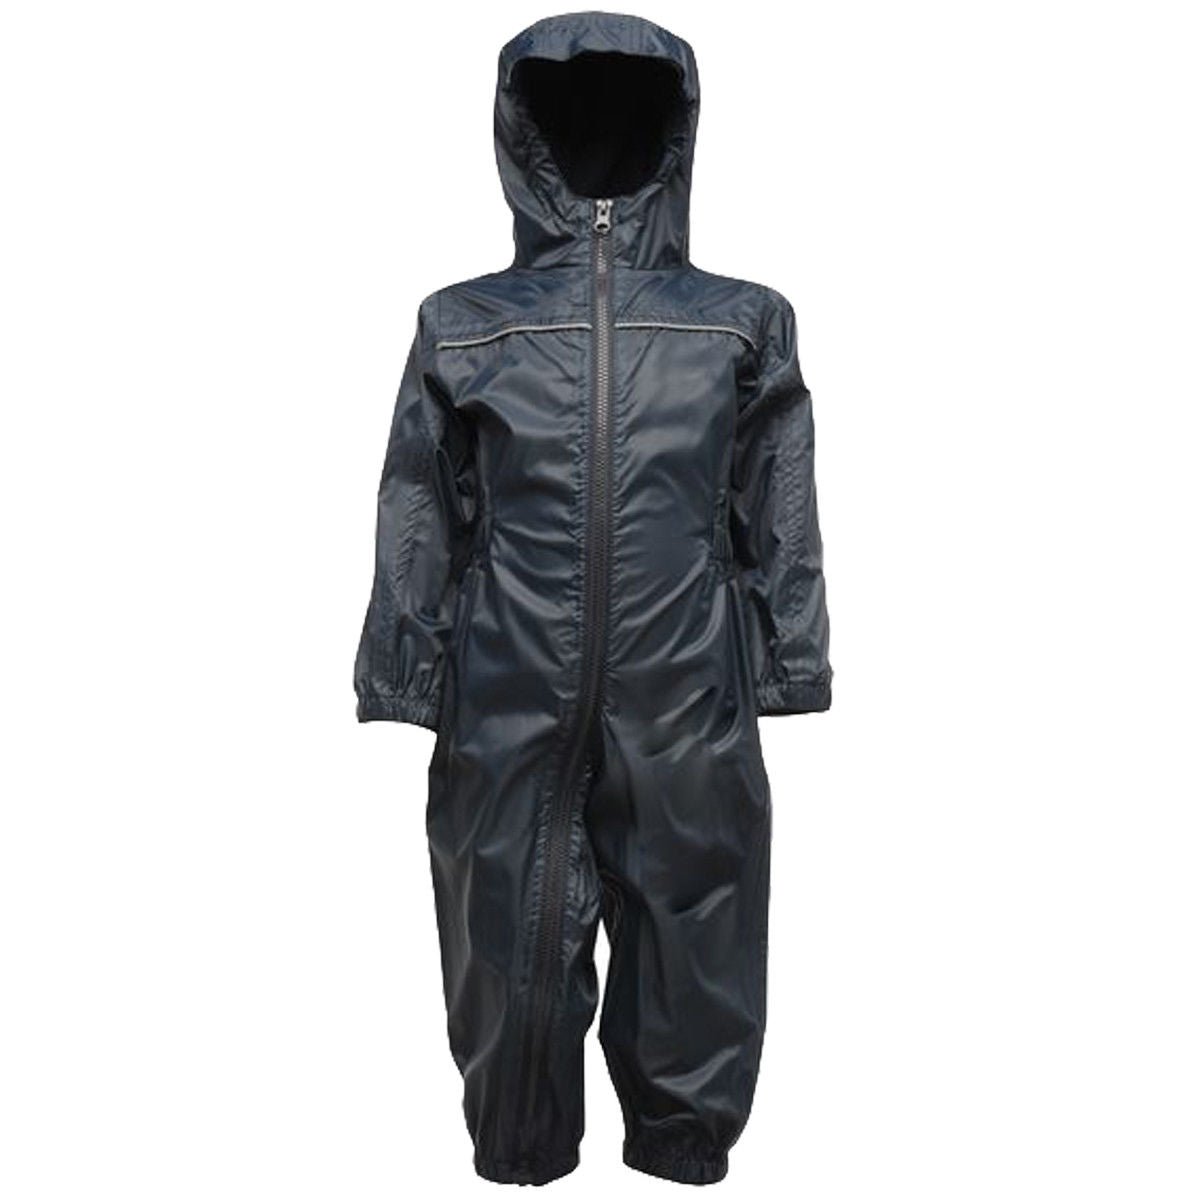 Kids Regatta Unisex Breathable Rain Suit - Outland Gear